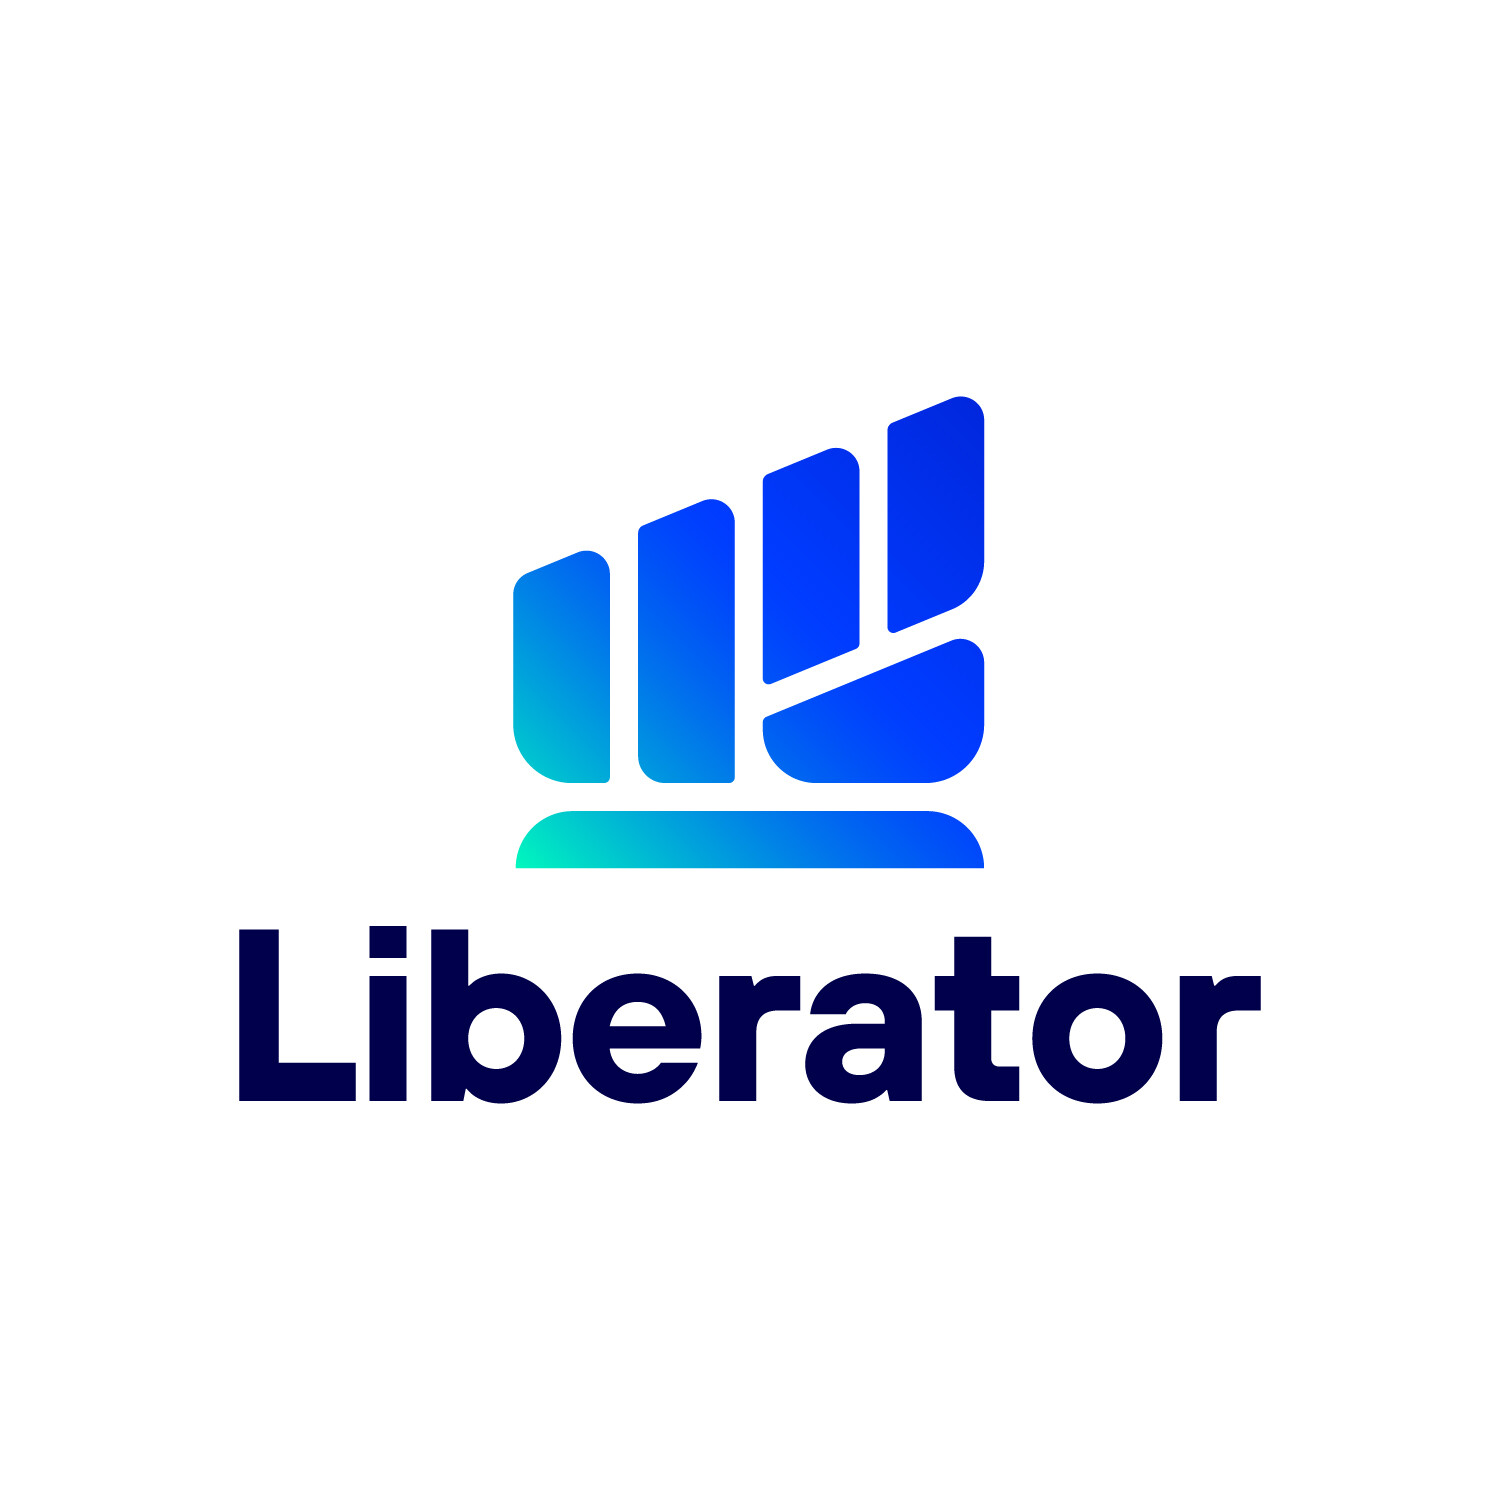 สุดยอด บล.ต้องยกนิ้วให้ "Liberator" นอกจากให้เทรดฟรีไม่มีค่าคอม ยังเสิร์ฟต่อ บริการ "LIB Express" ผู้ช่วยแบบส่วนตัว ใส่ใจนักลงทุนกว่านี้ไม่มีแล้ว!!